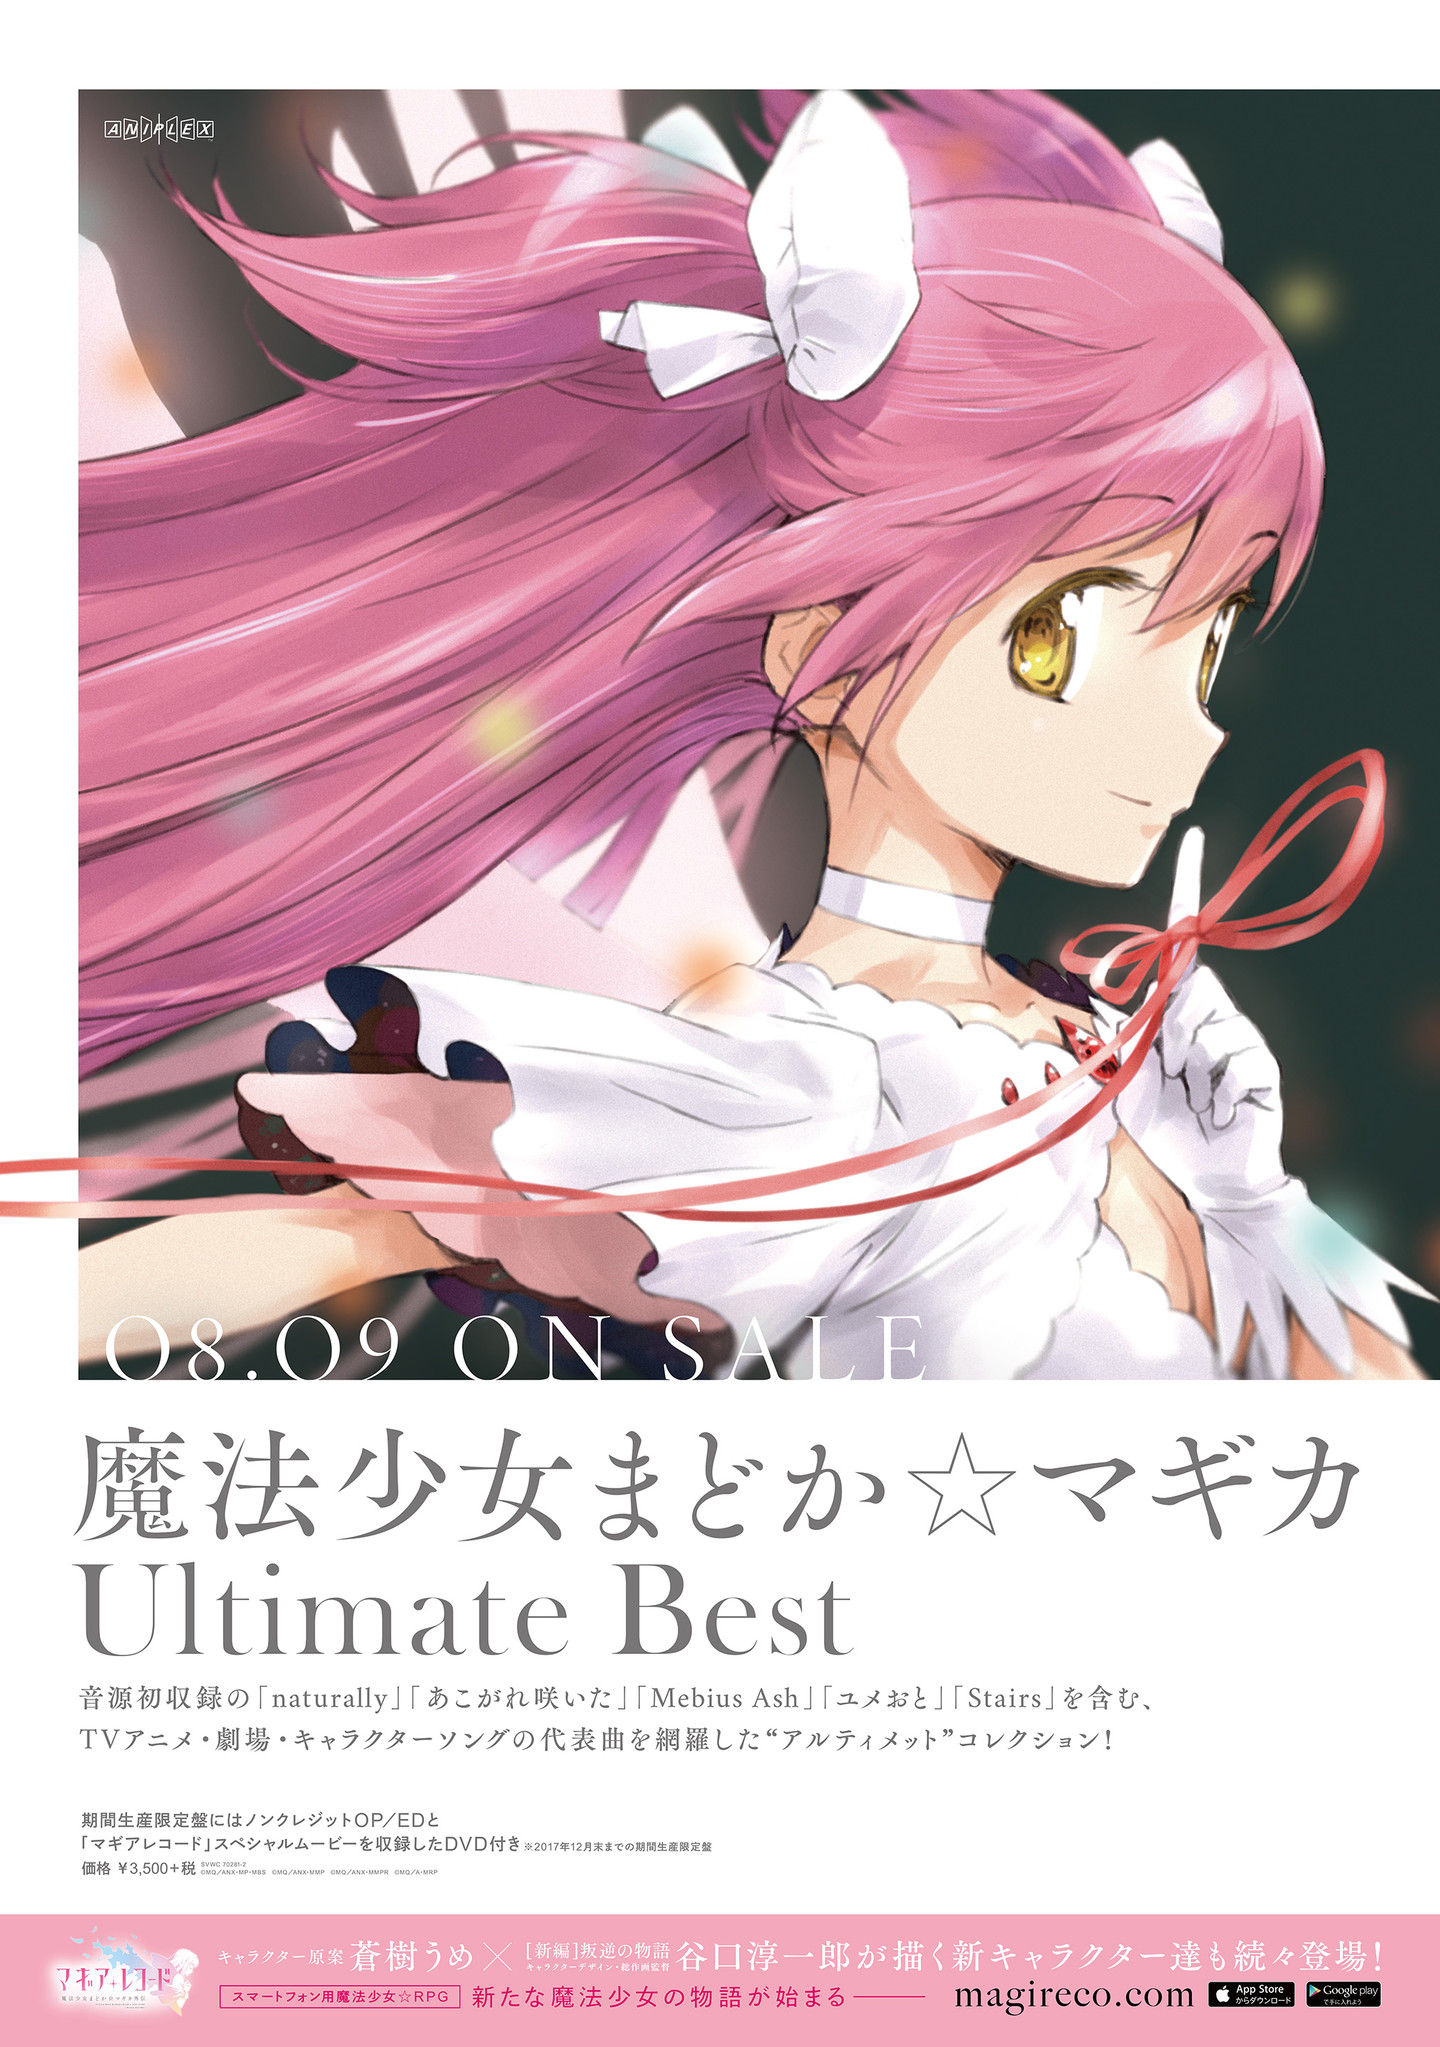 レコード魔法少女まどか☆マギカ Ultimate Best アナログレコード - 邦楽